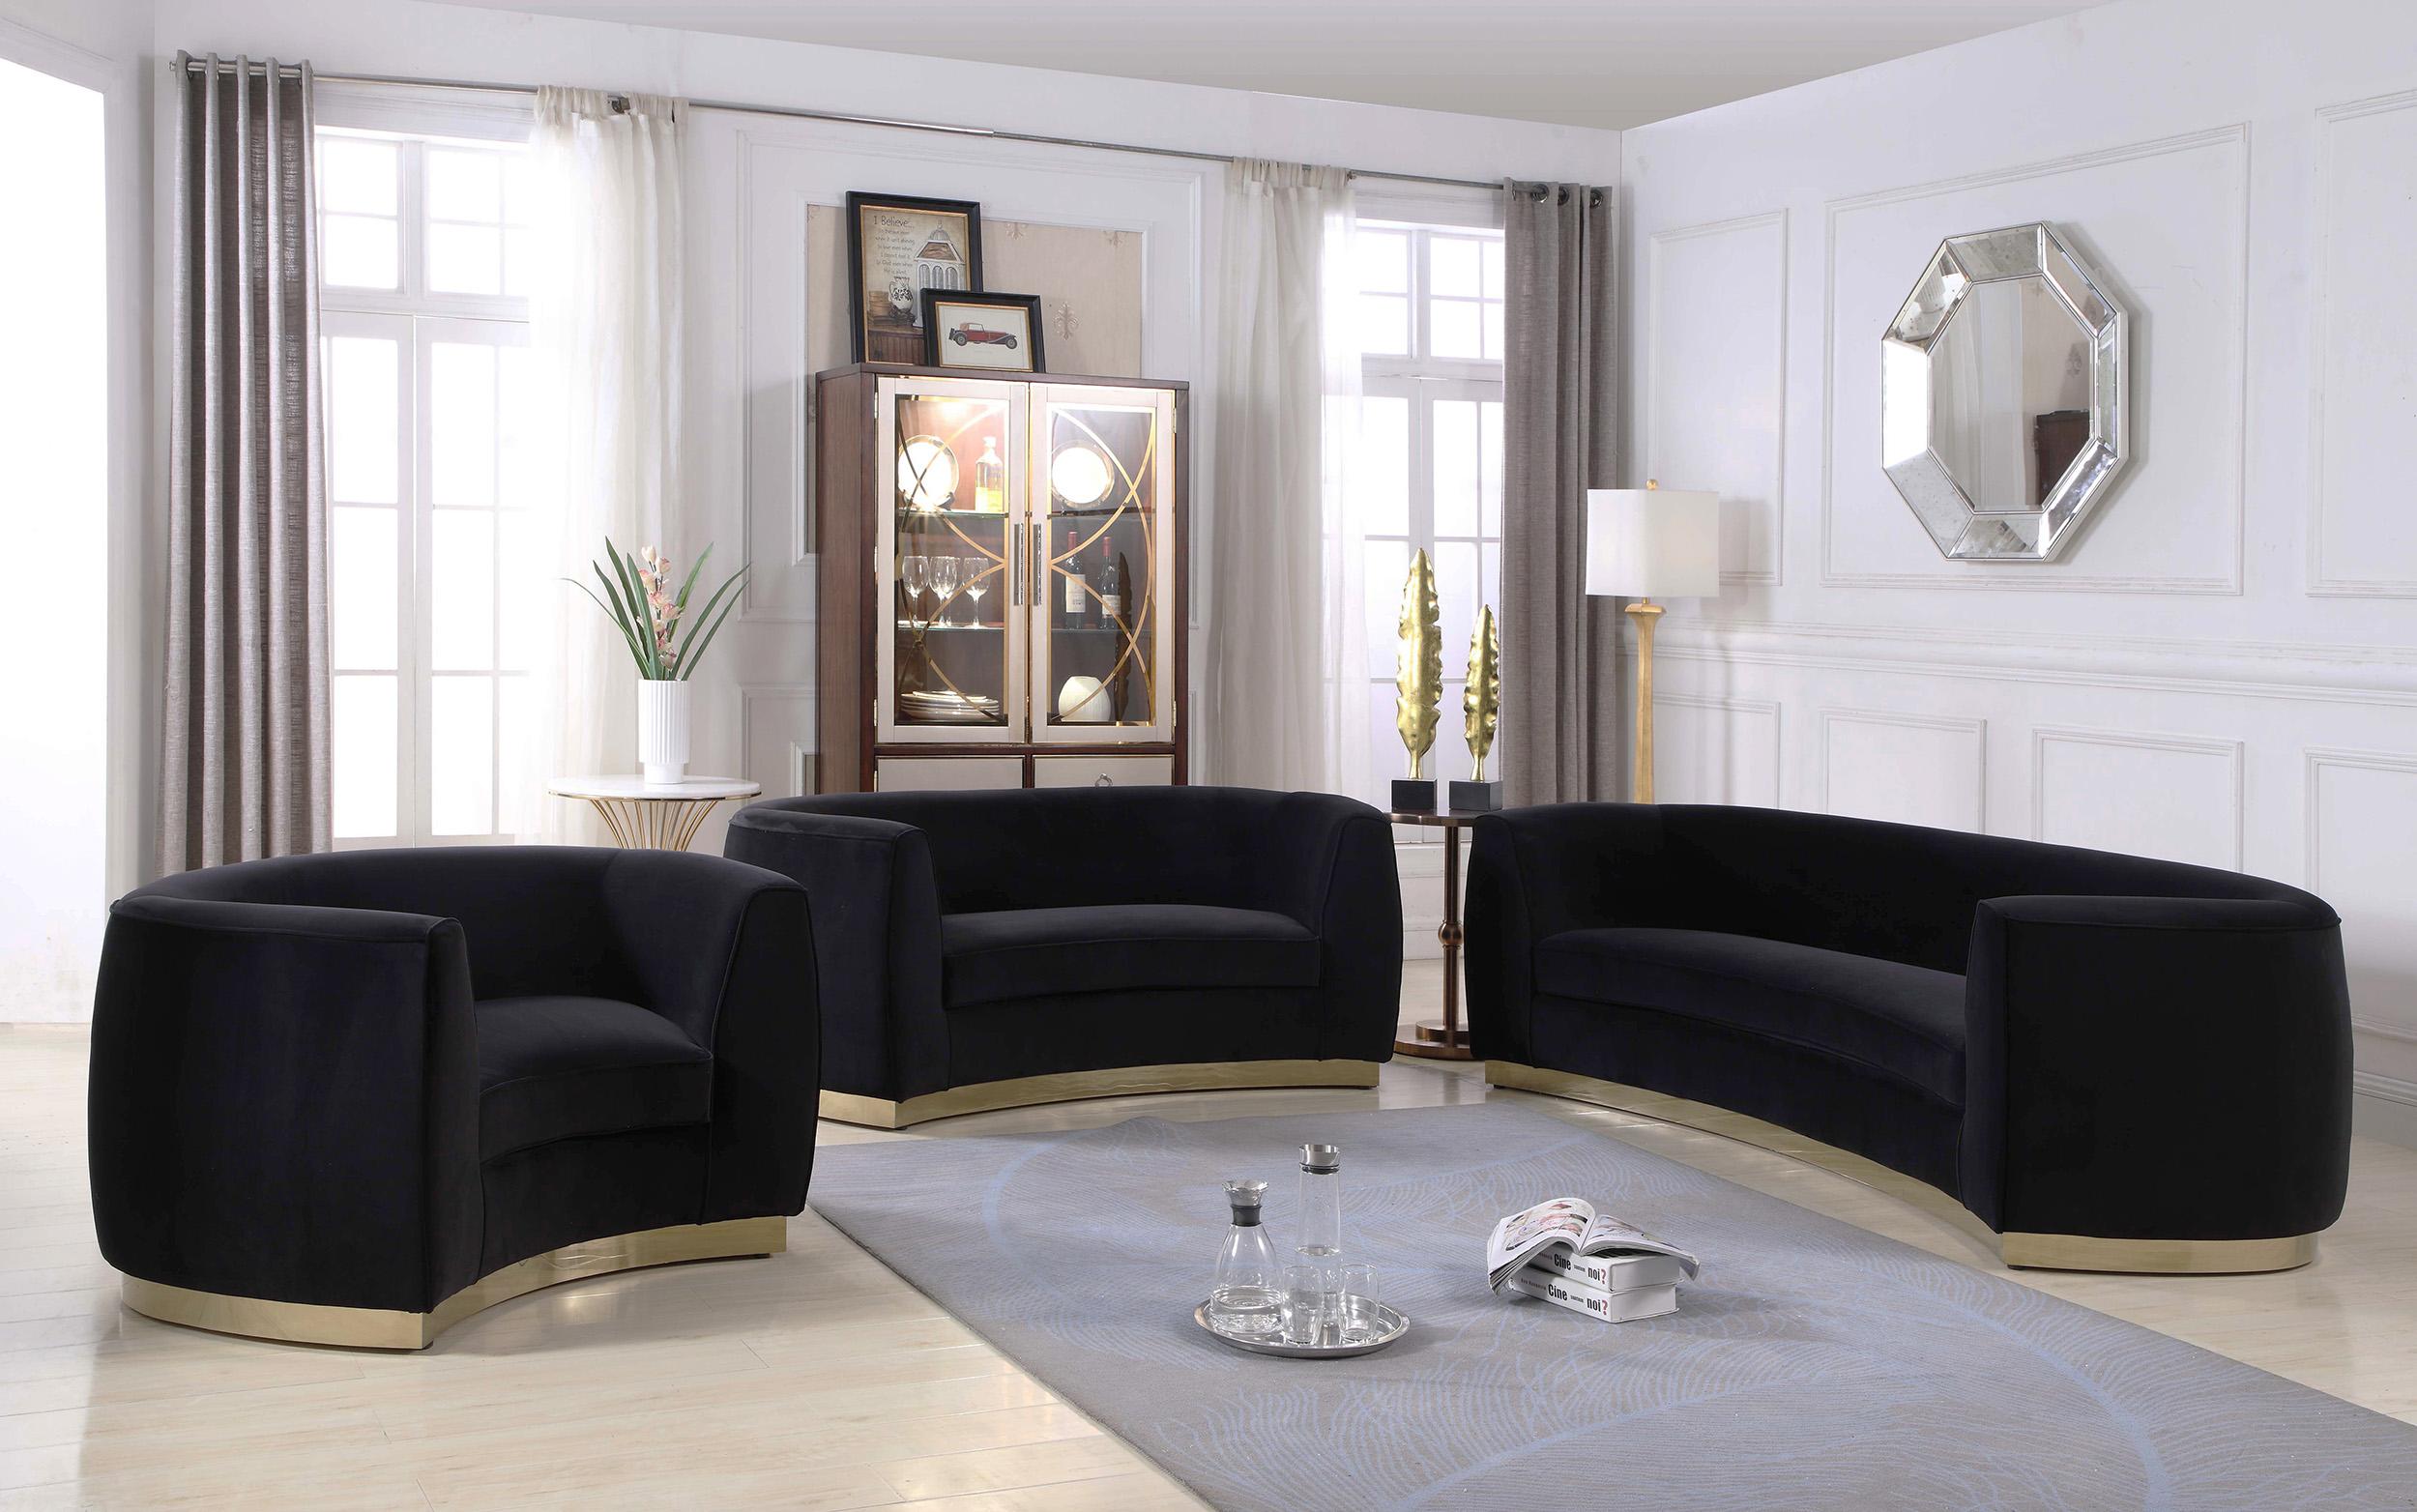 Contemporary, Modern Sofa Set Julian 620Black-S-Set-3 620Black-S-Set-3 in Gold, Black Soft Velvet